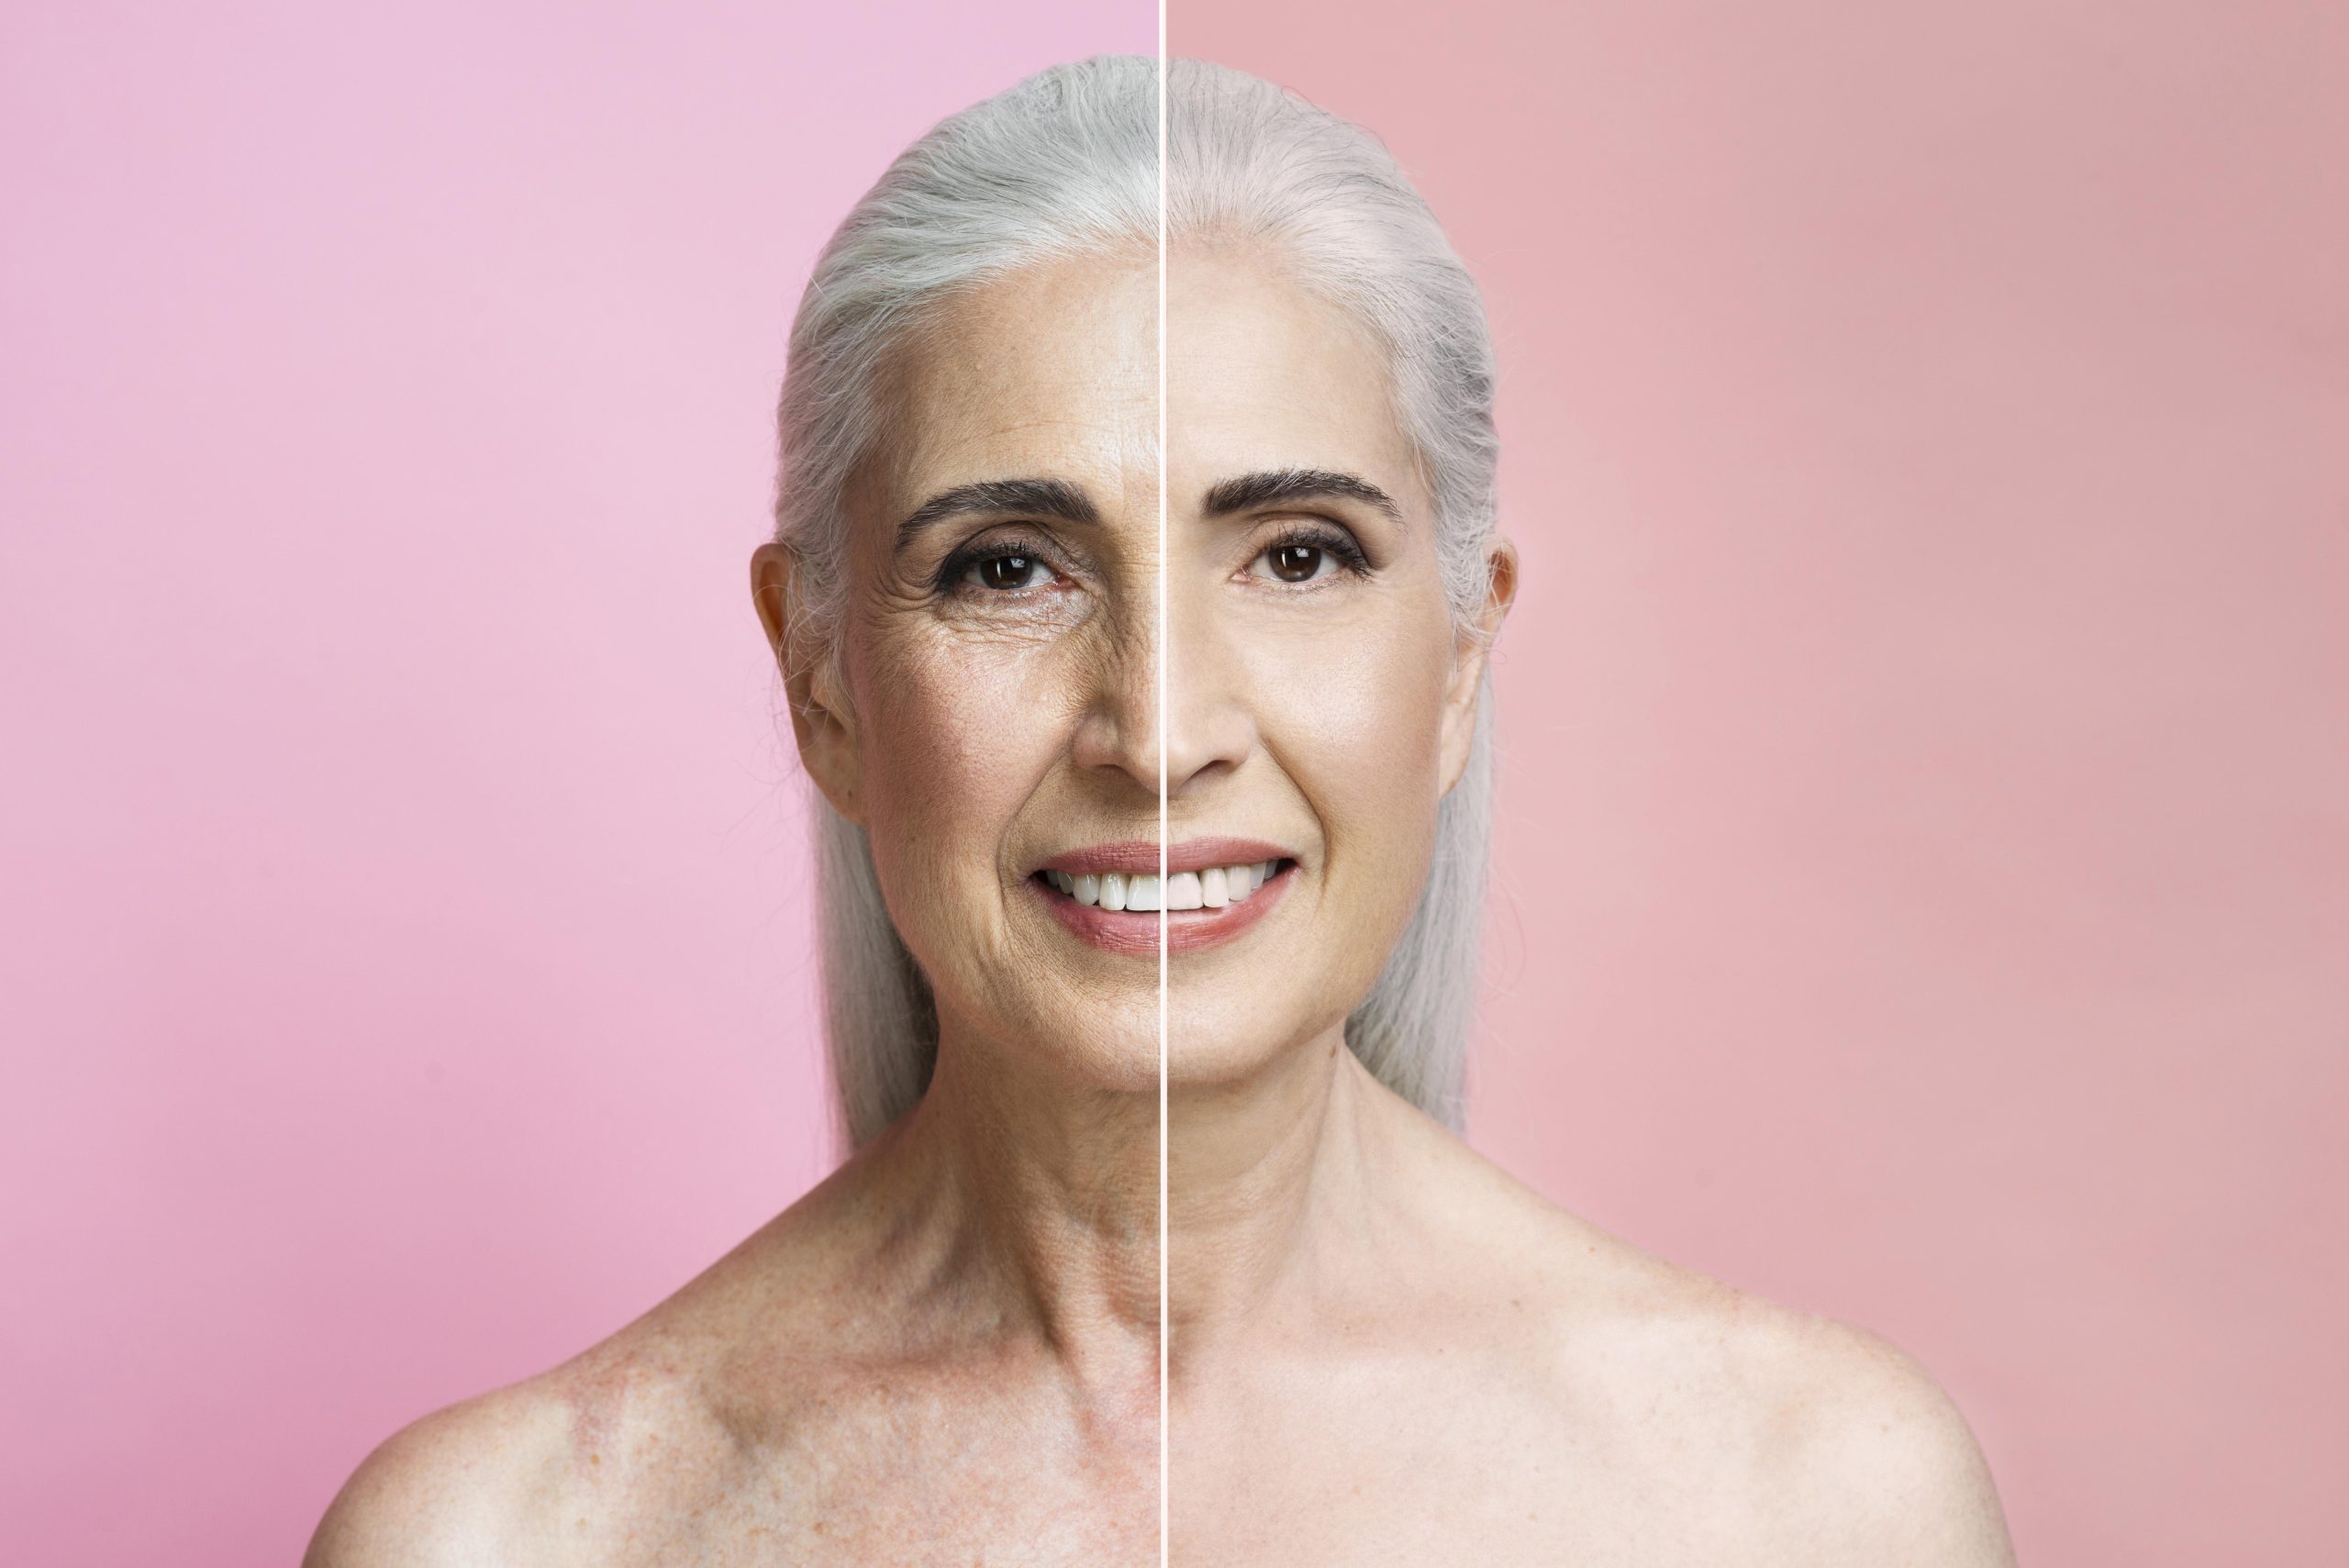 Entenda o que é o envelhecimento cutâneo, os tipos de envelhecimento, os principais sinais e causas, além dos tratamentos disponíveis e os cuidados diários.